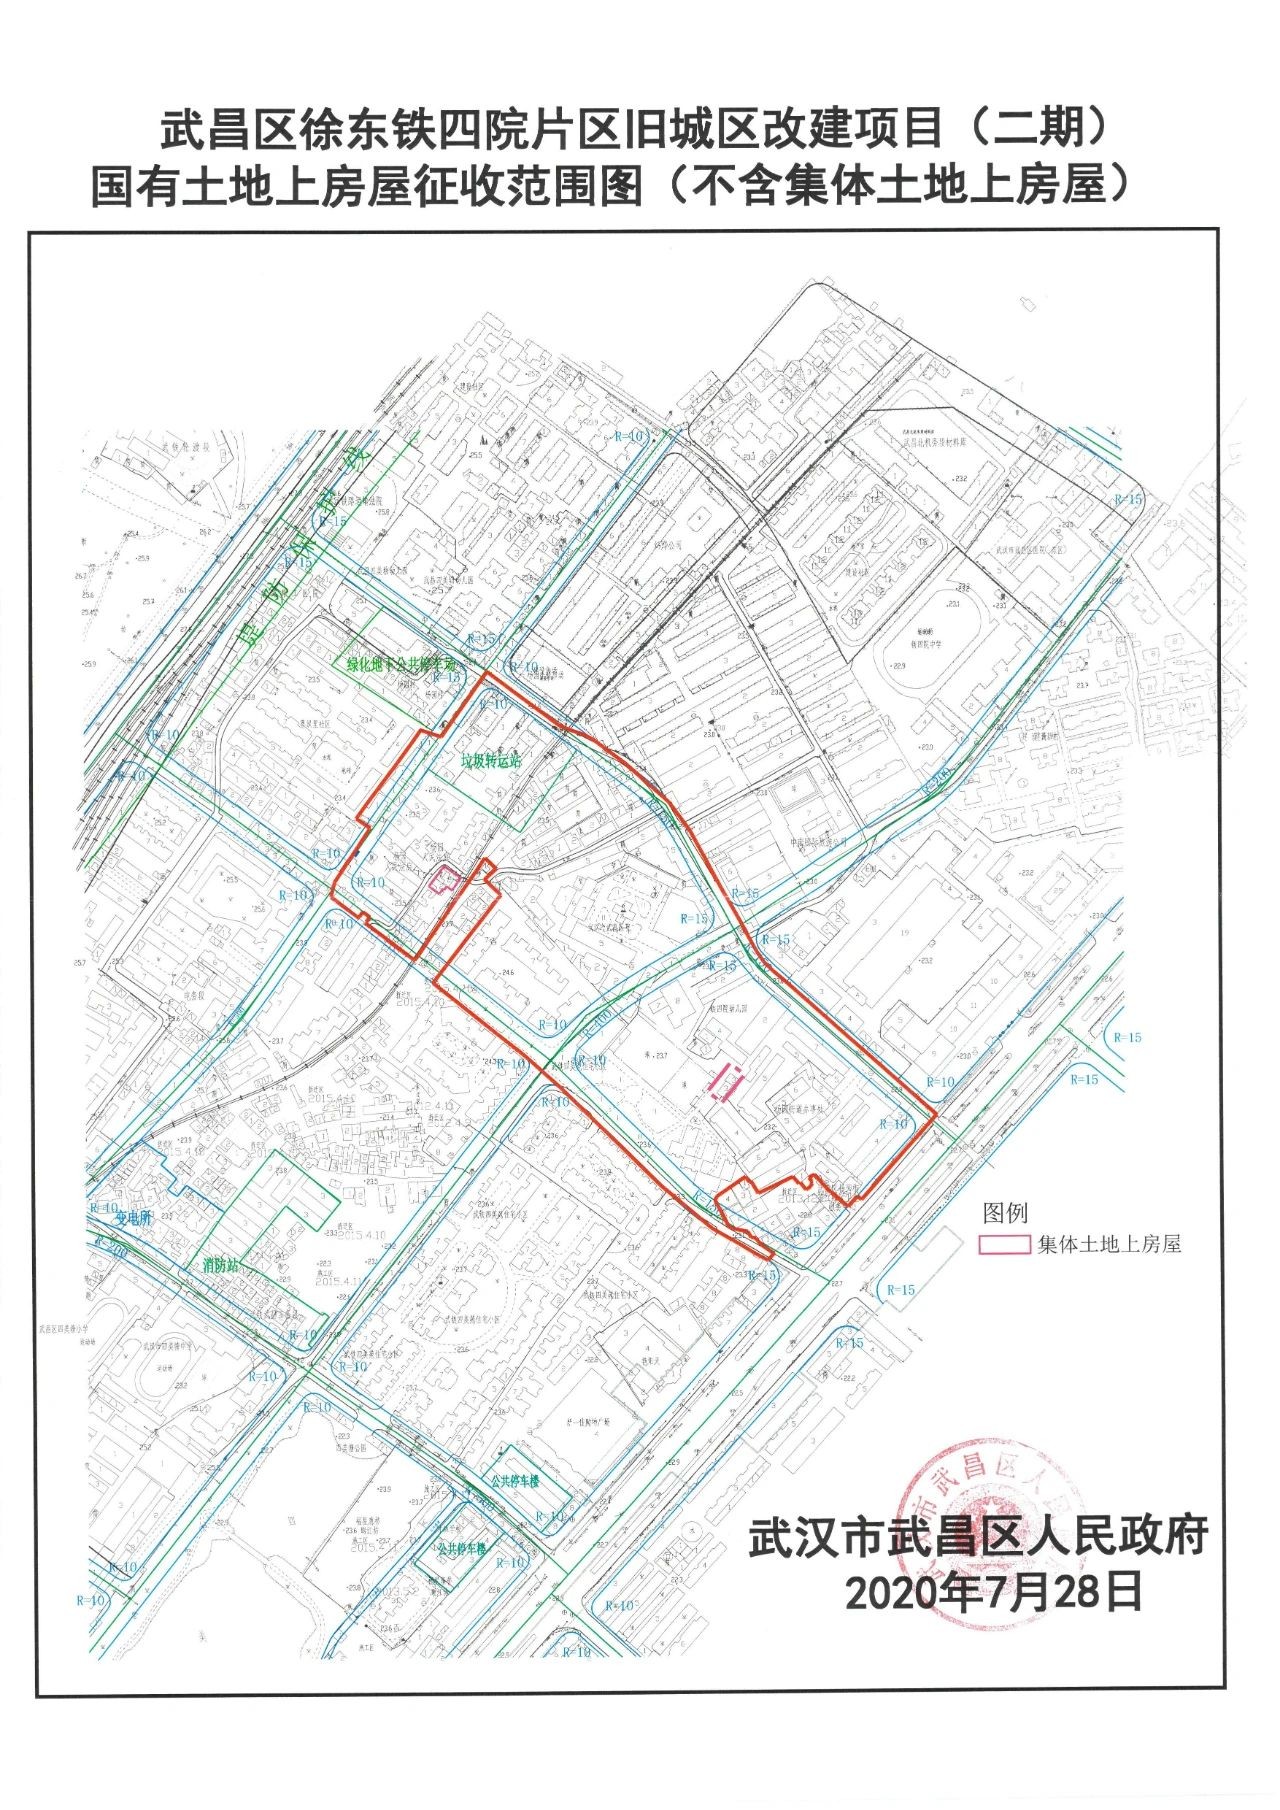 2021武汉"拆迁地图"出炉!一群人身价要涨!